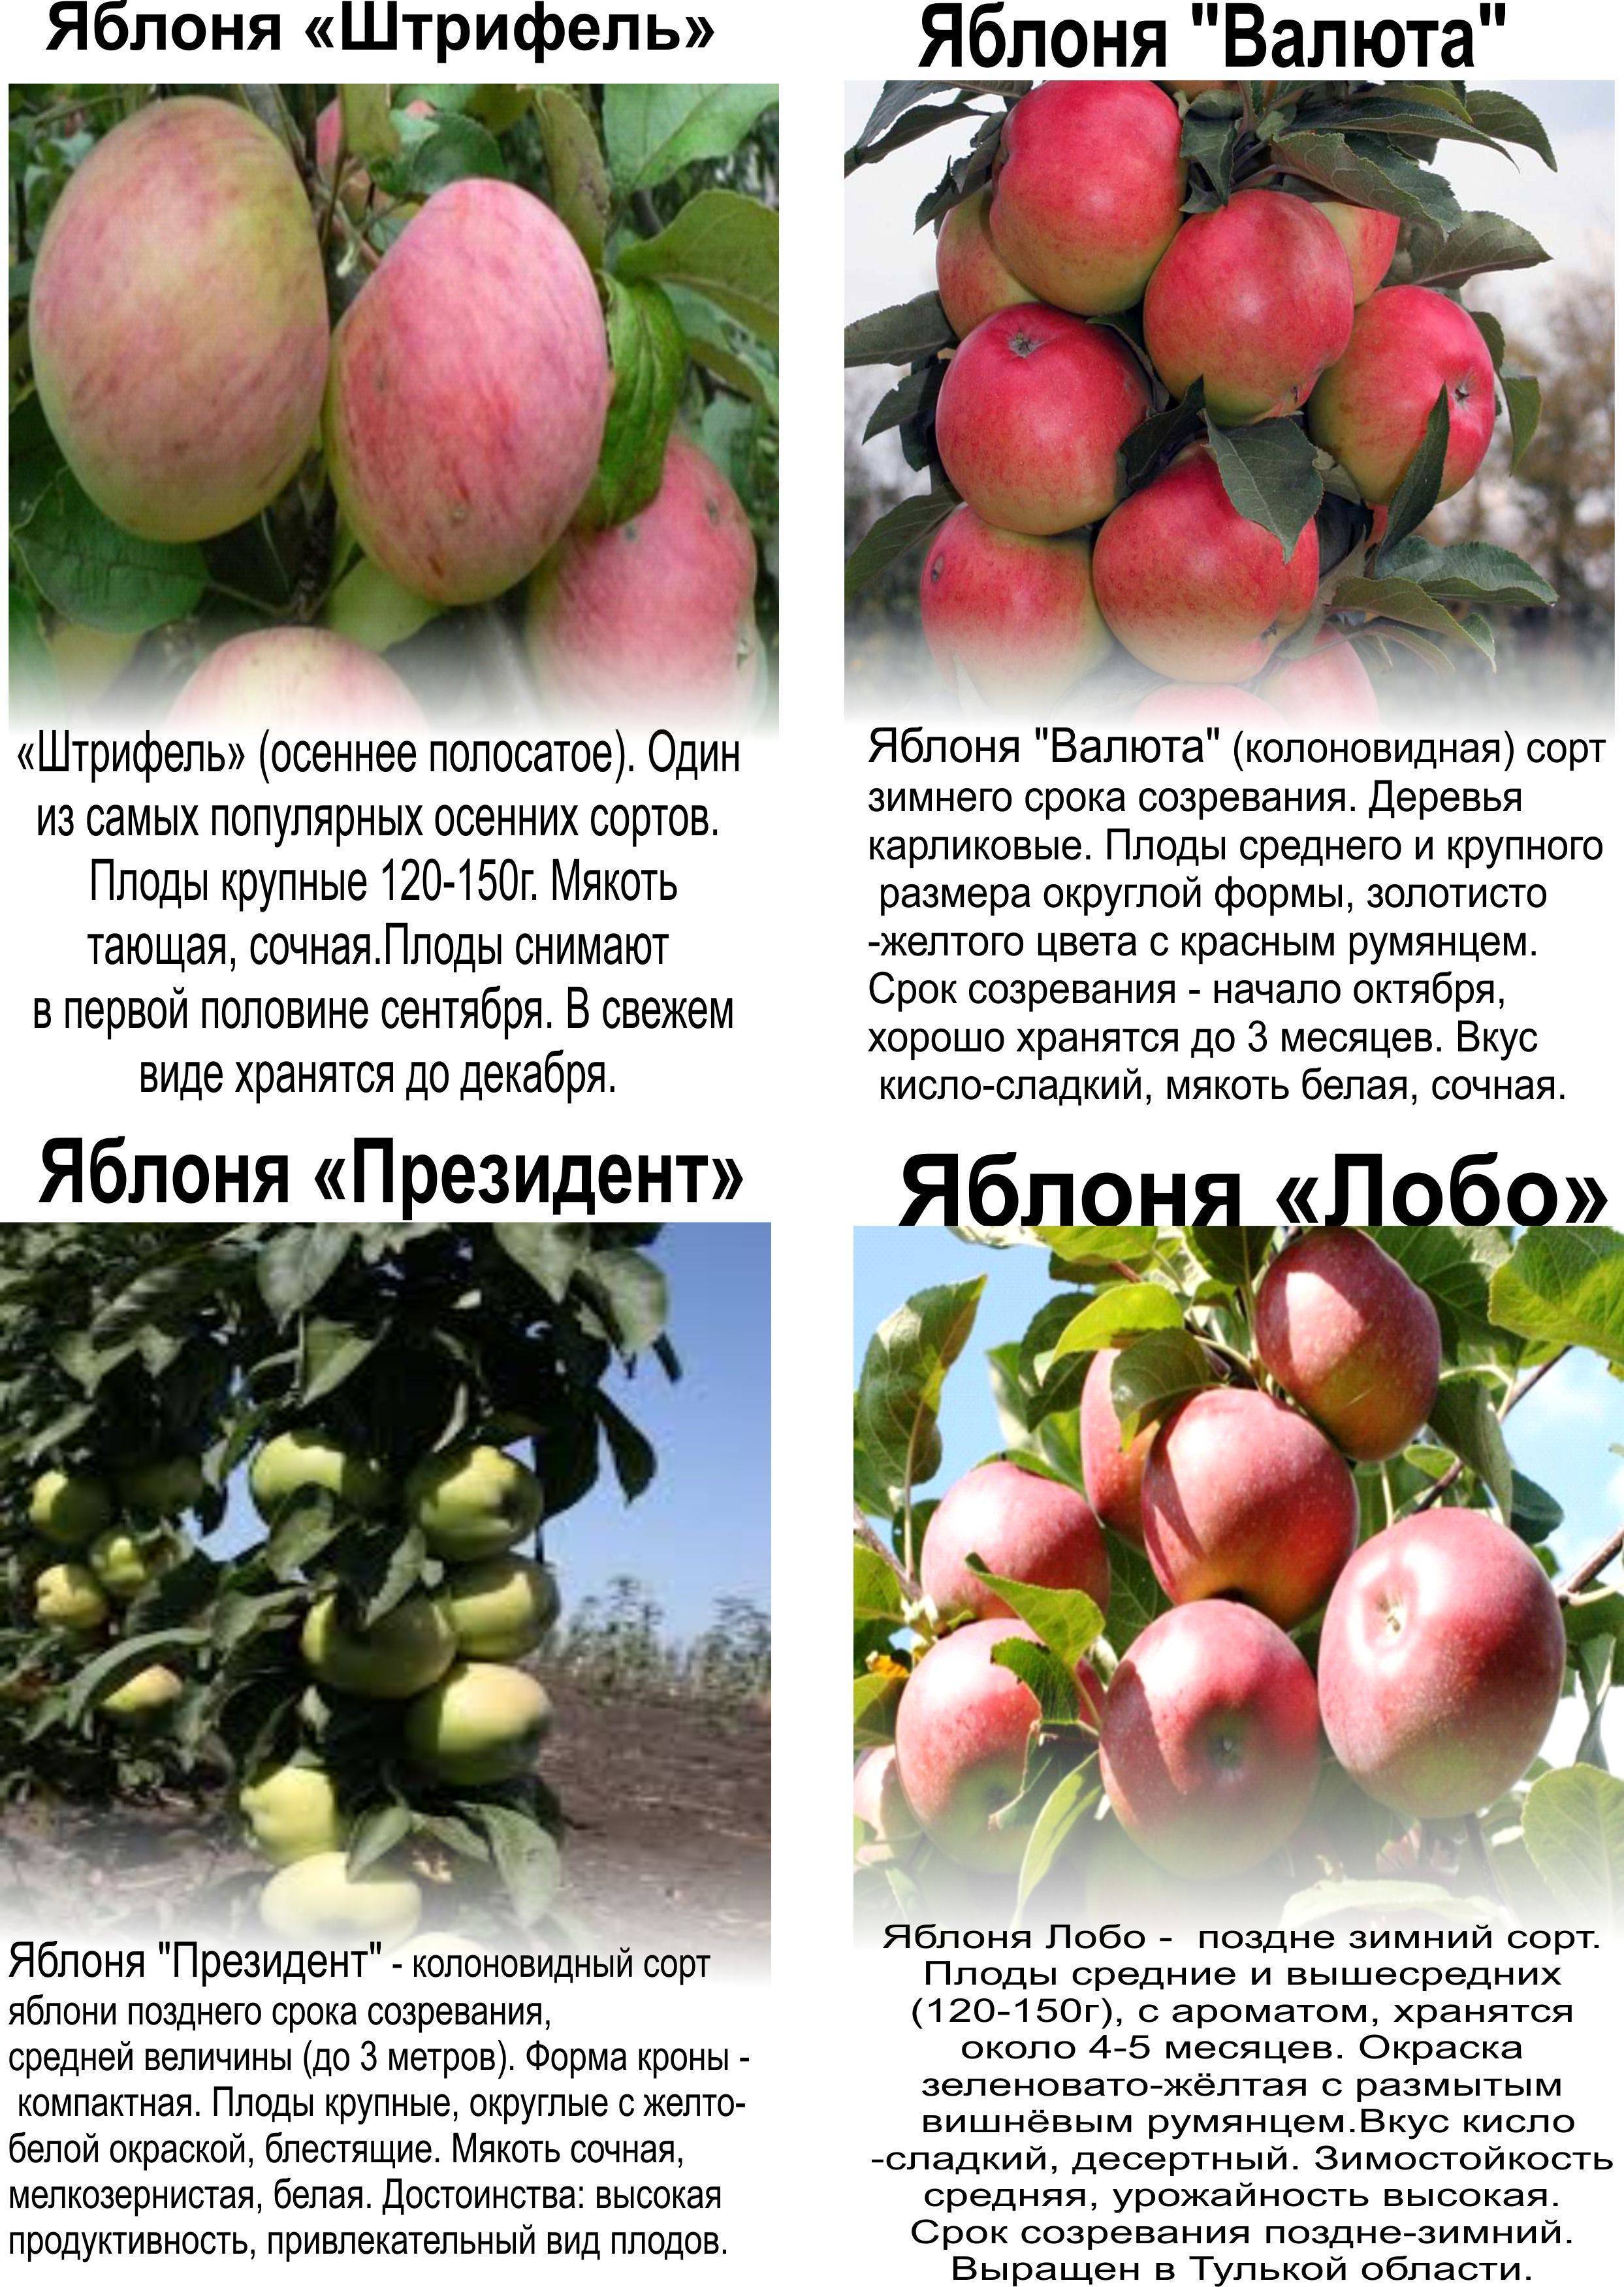 Яблоня орлинка: описание и характеристики сорта, выращивание и размножение